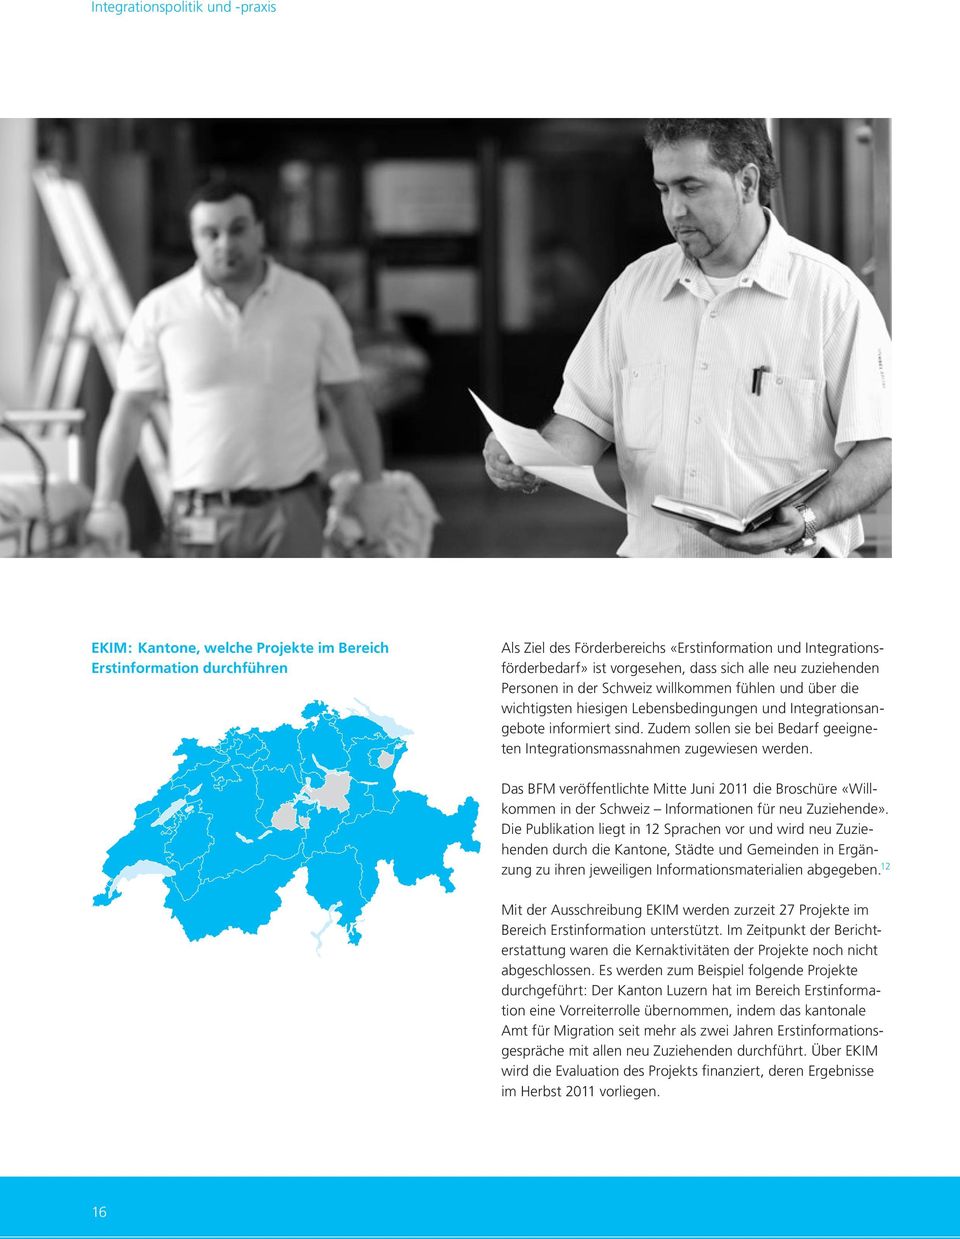 Zudem sollen sie bei Bedarf geeigneten Integrationsmassnahmen zugewiesen werden. Das BFM veröffentlichte Mitte Juni 2011 die Broschüre «Willkommen in der Schweiz Informationen für neu Zuziehende».